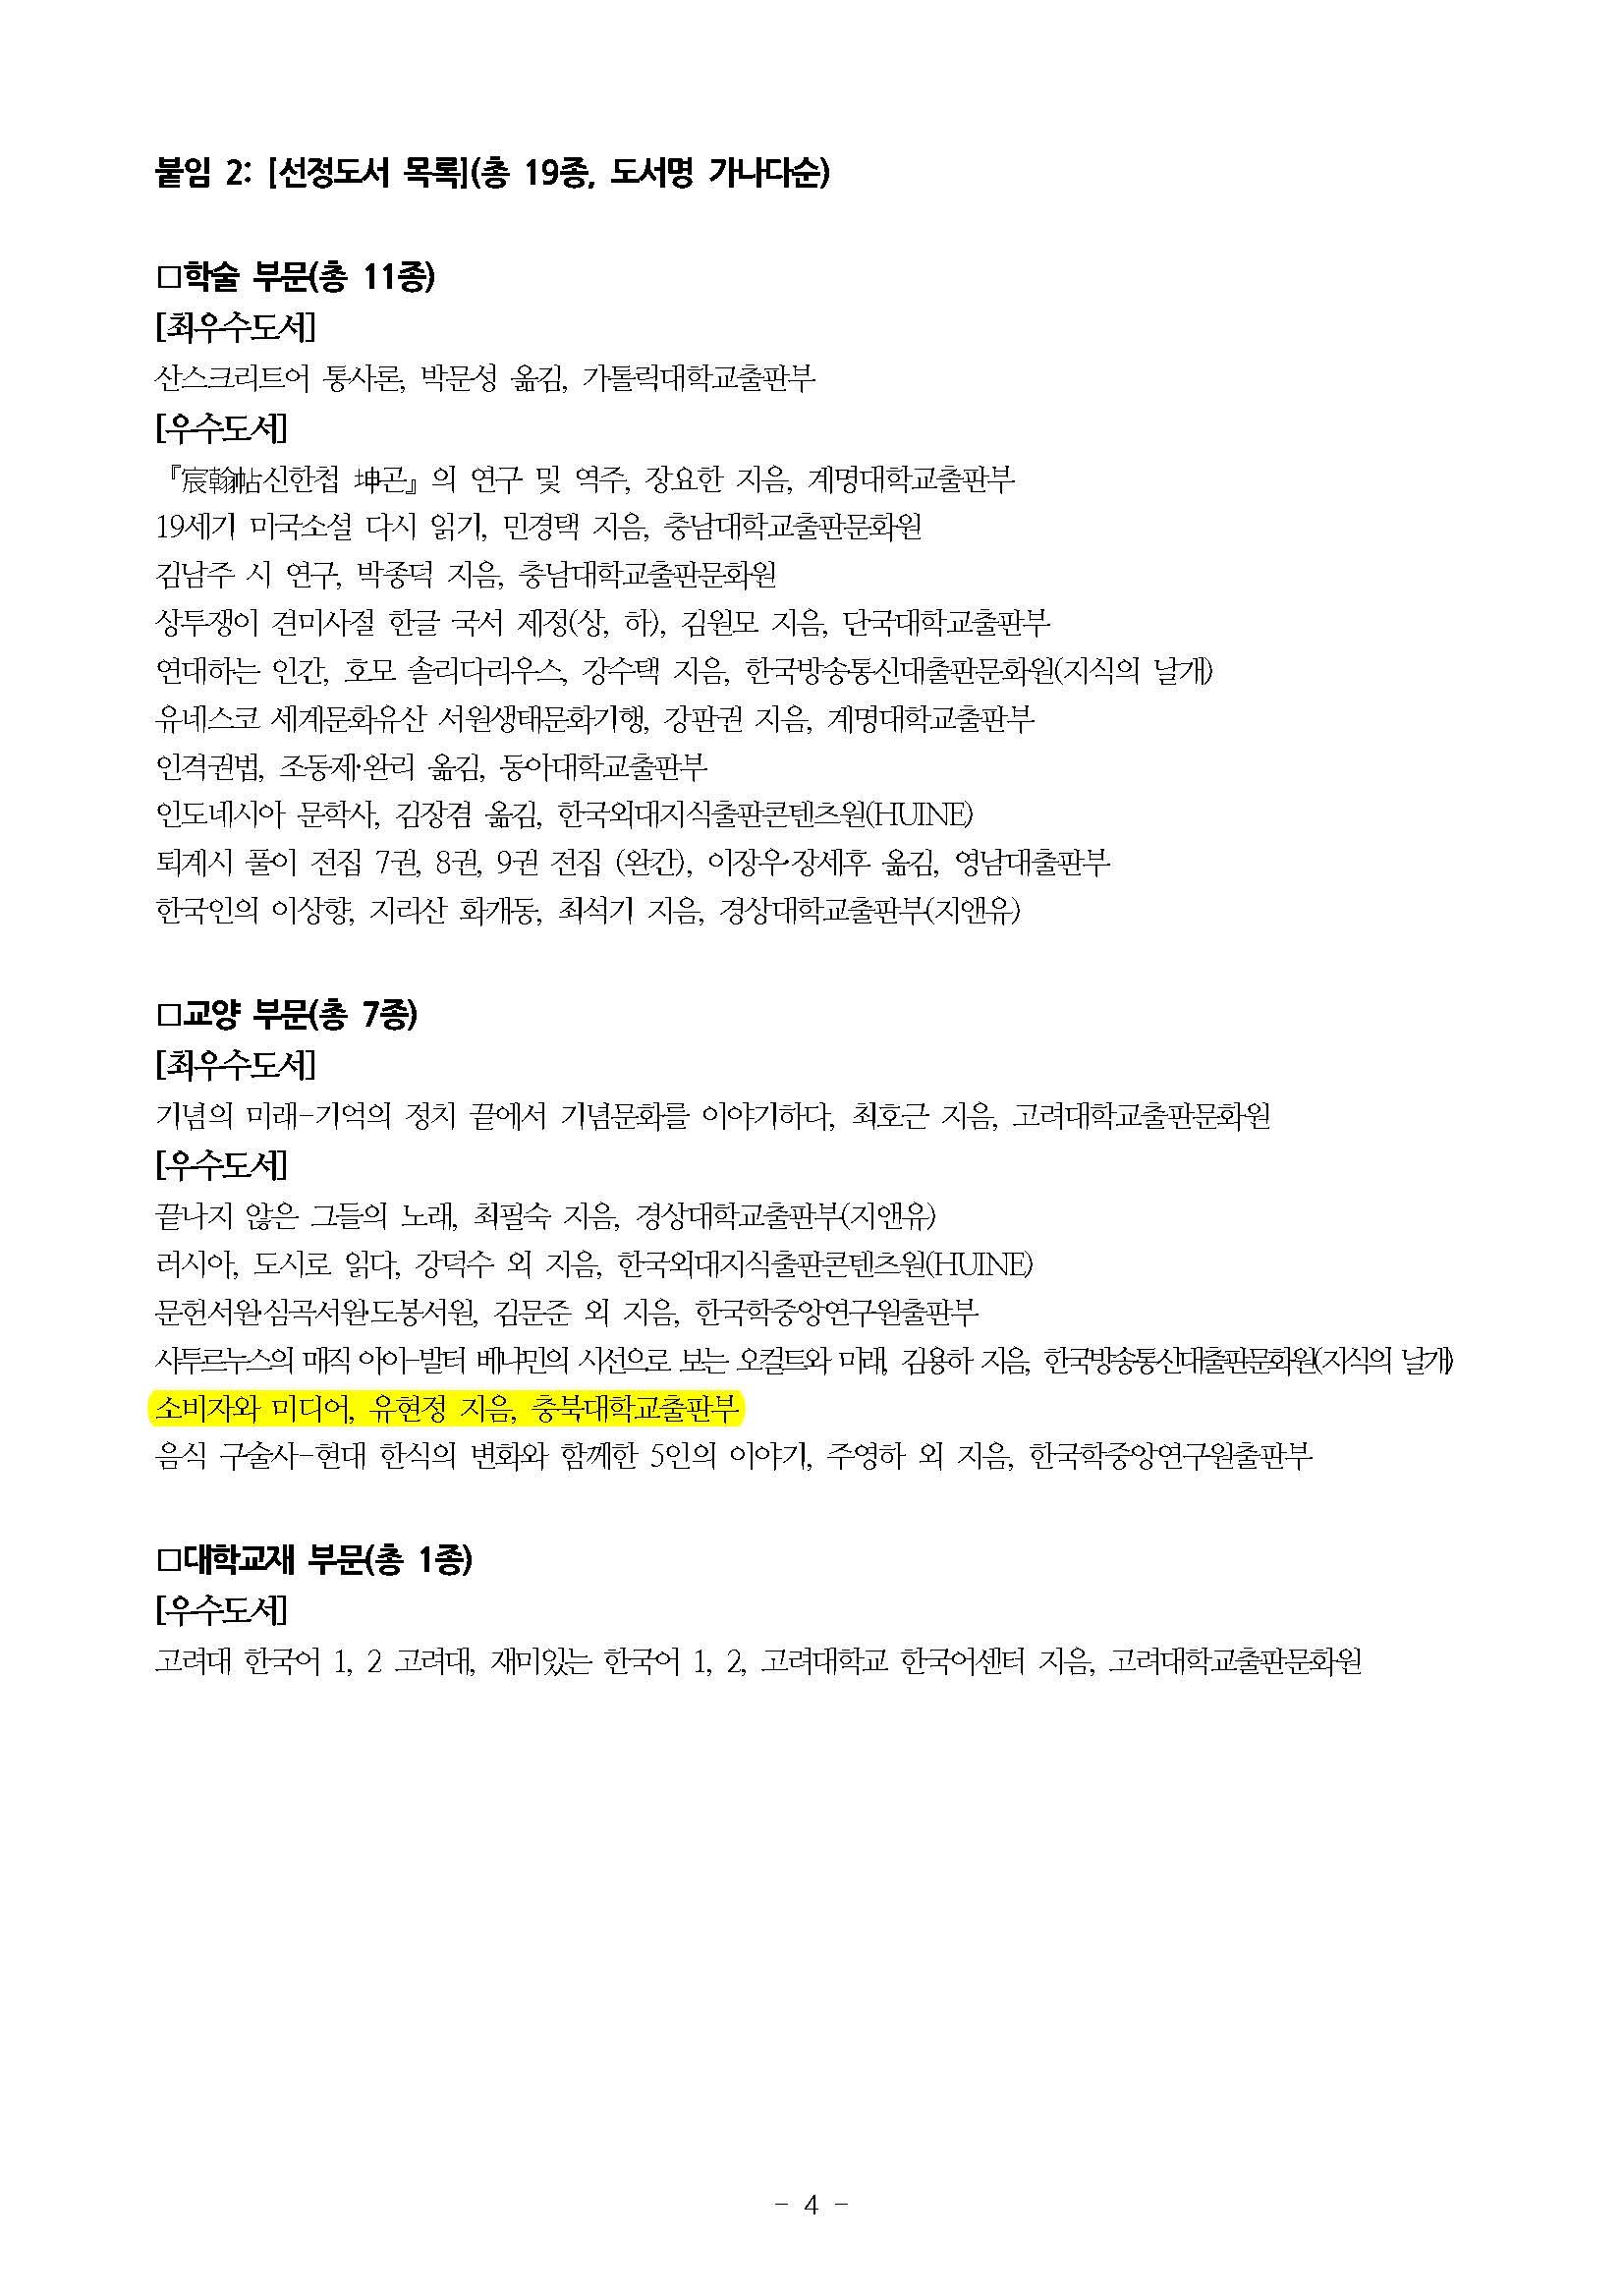 한국대학출판협회 2019 올해의 우수도서 선정 결과 알림(업로드용)_페이지_2.jpg